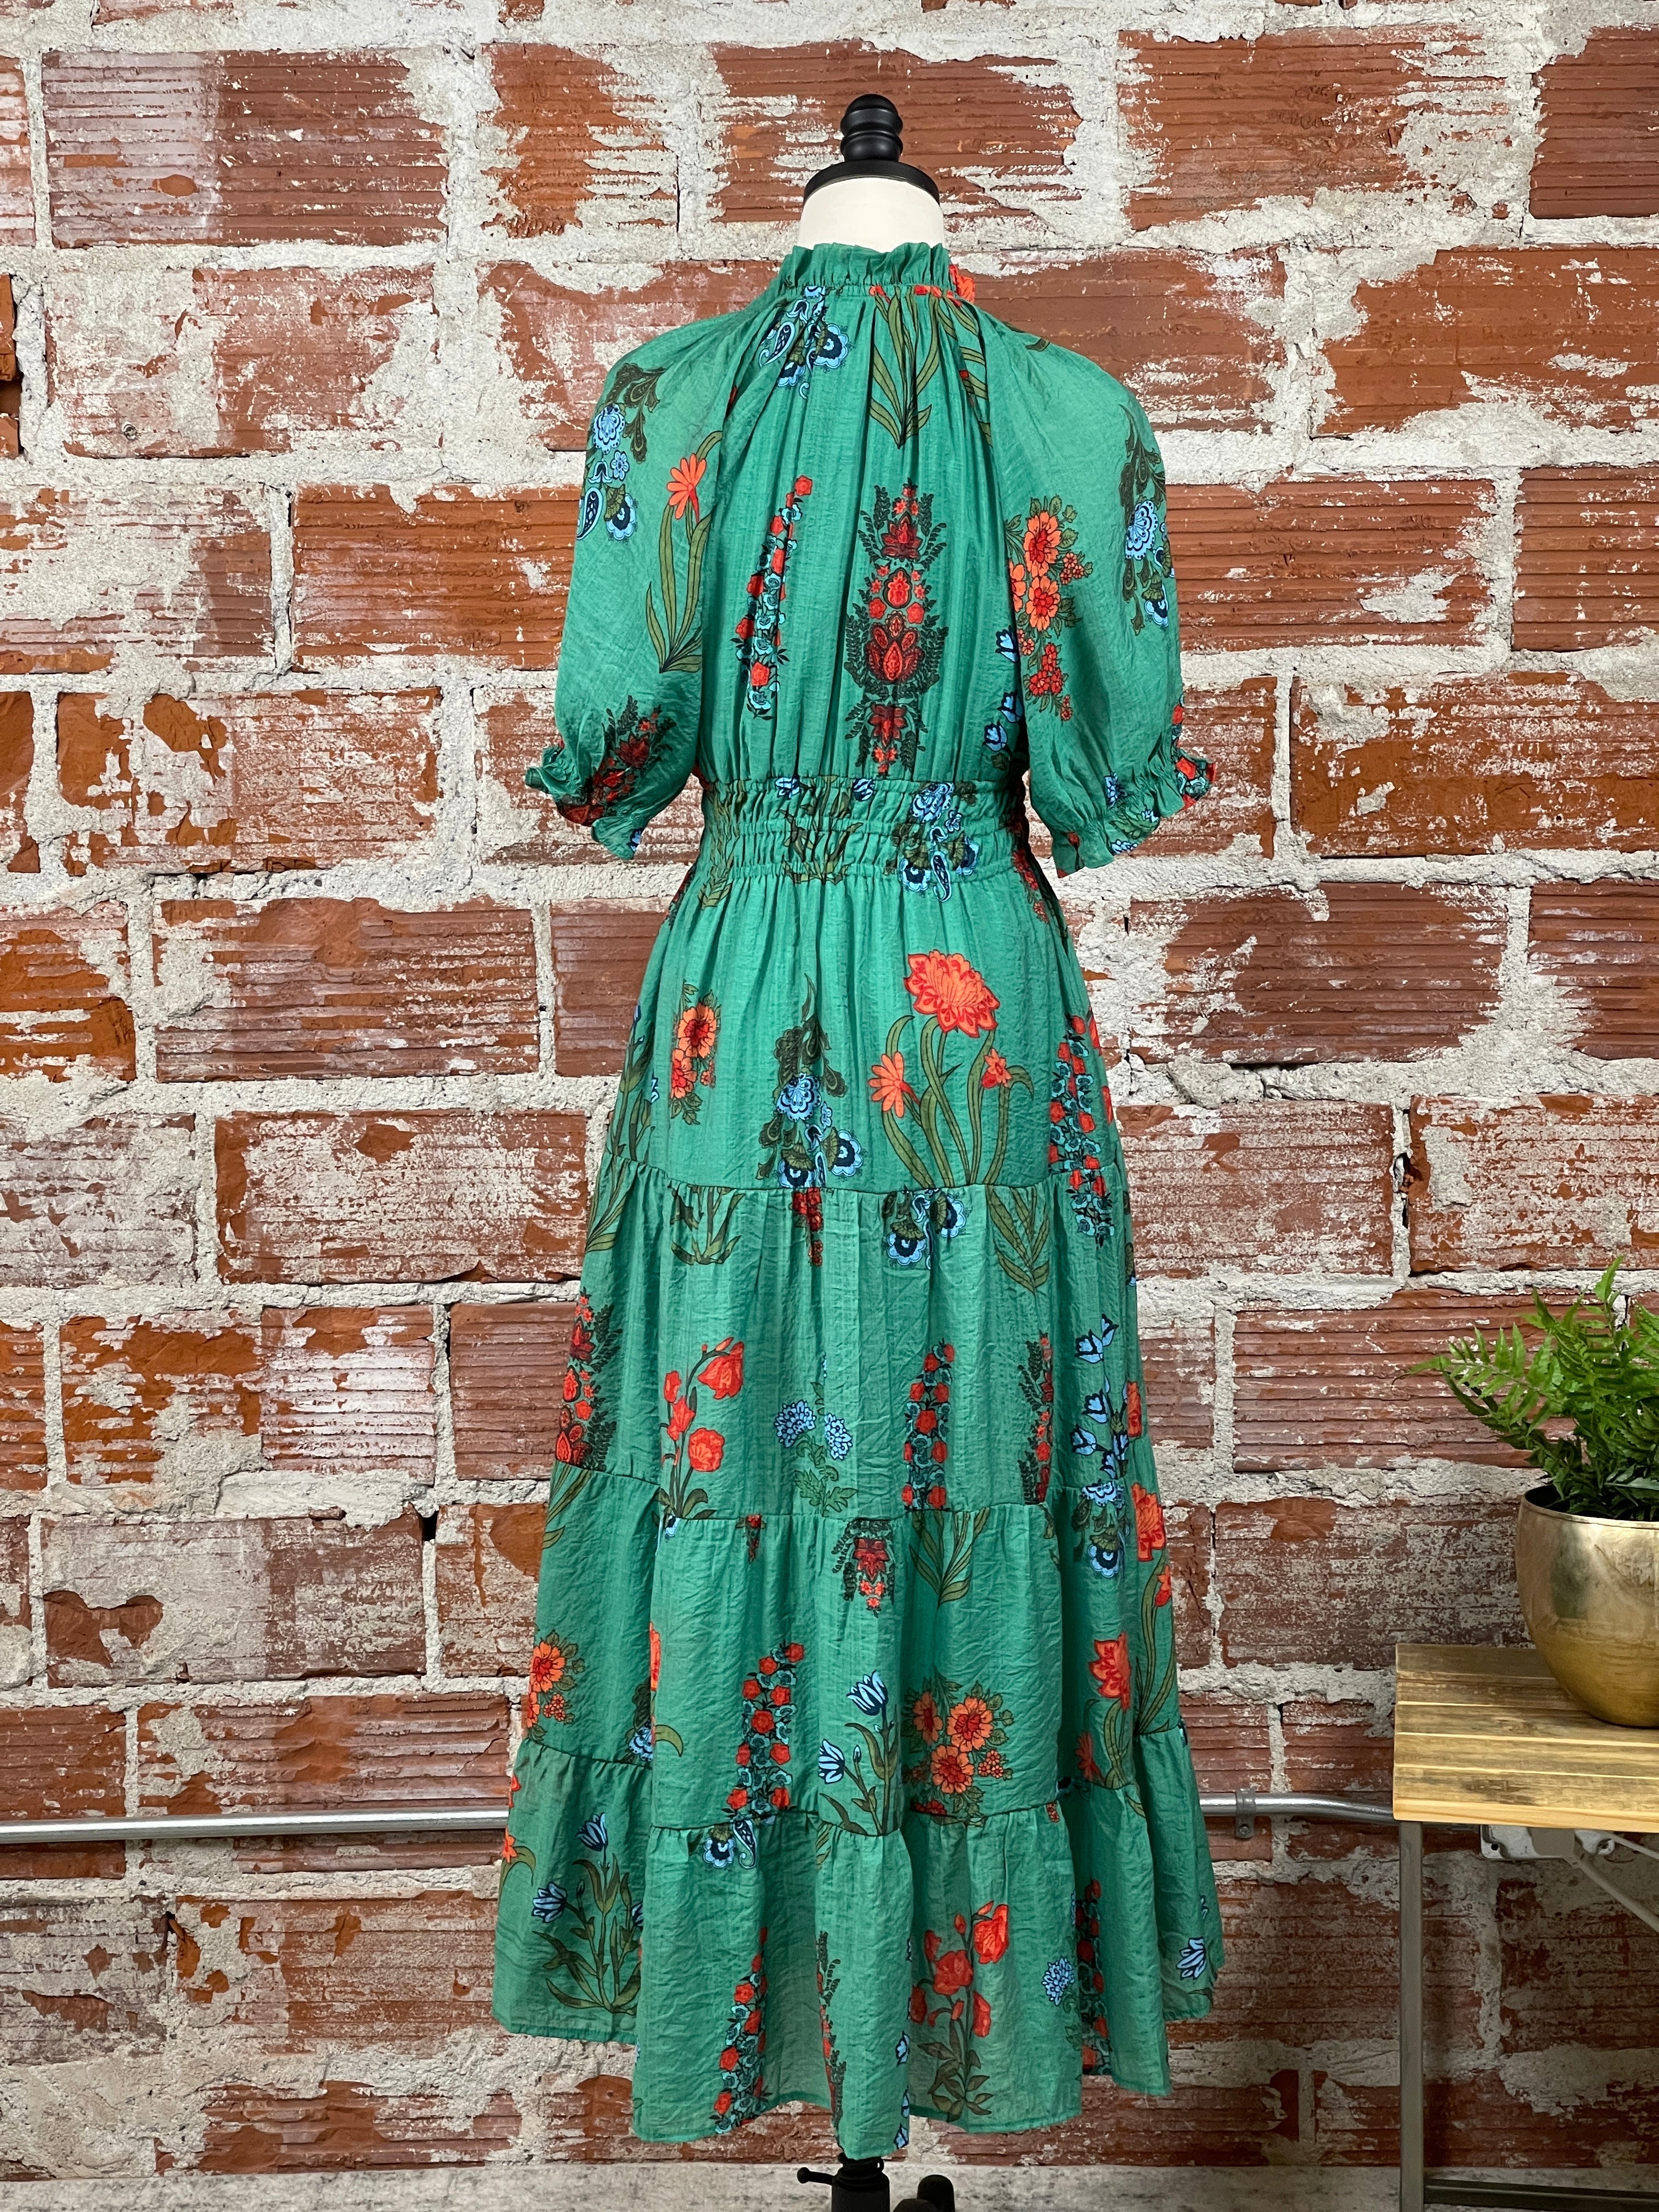 Monet Dress in Emerald Green-152 Dresses - Long-Little Bird Boutique